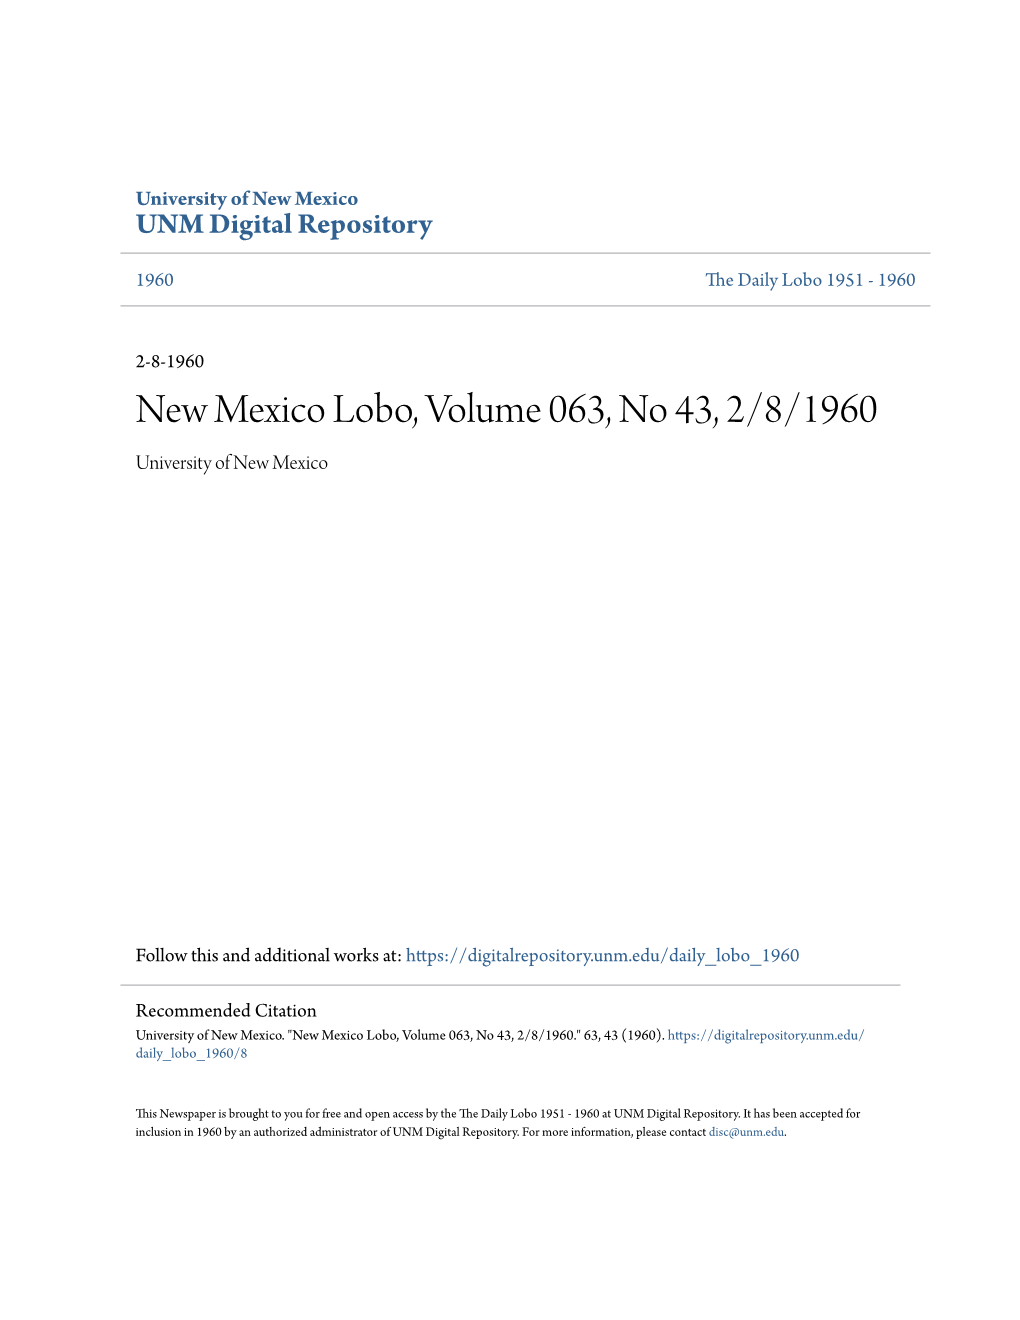 New Mexico Lobo, Volume 063, No 43, 2/8/1960 University of New Mexico